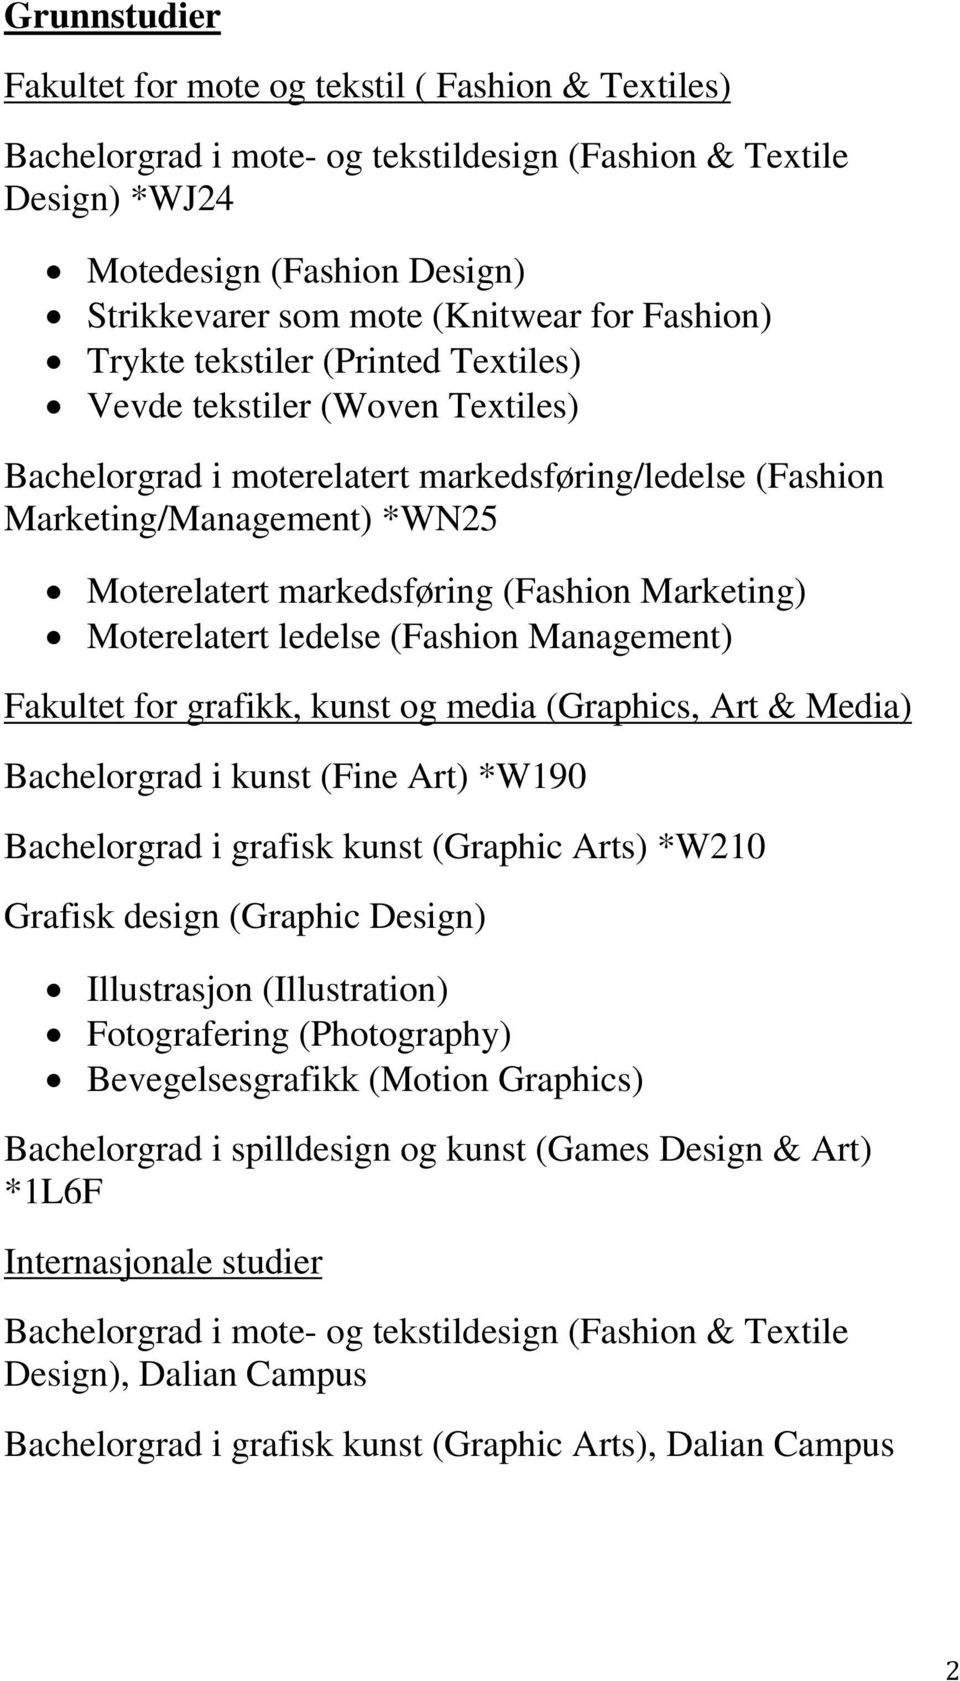 (Fashion Marketing) Moterelatert ledelse (Fashion Management) Fakultet for grafikk, kunst og media (Graphics, Art & Media) Bachelorgrad i kunst (Fine Art) *W190 Bachelorgrad i grafisk kunst (Graphic